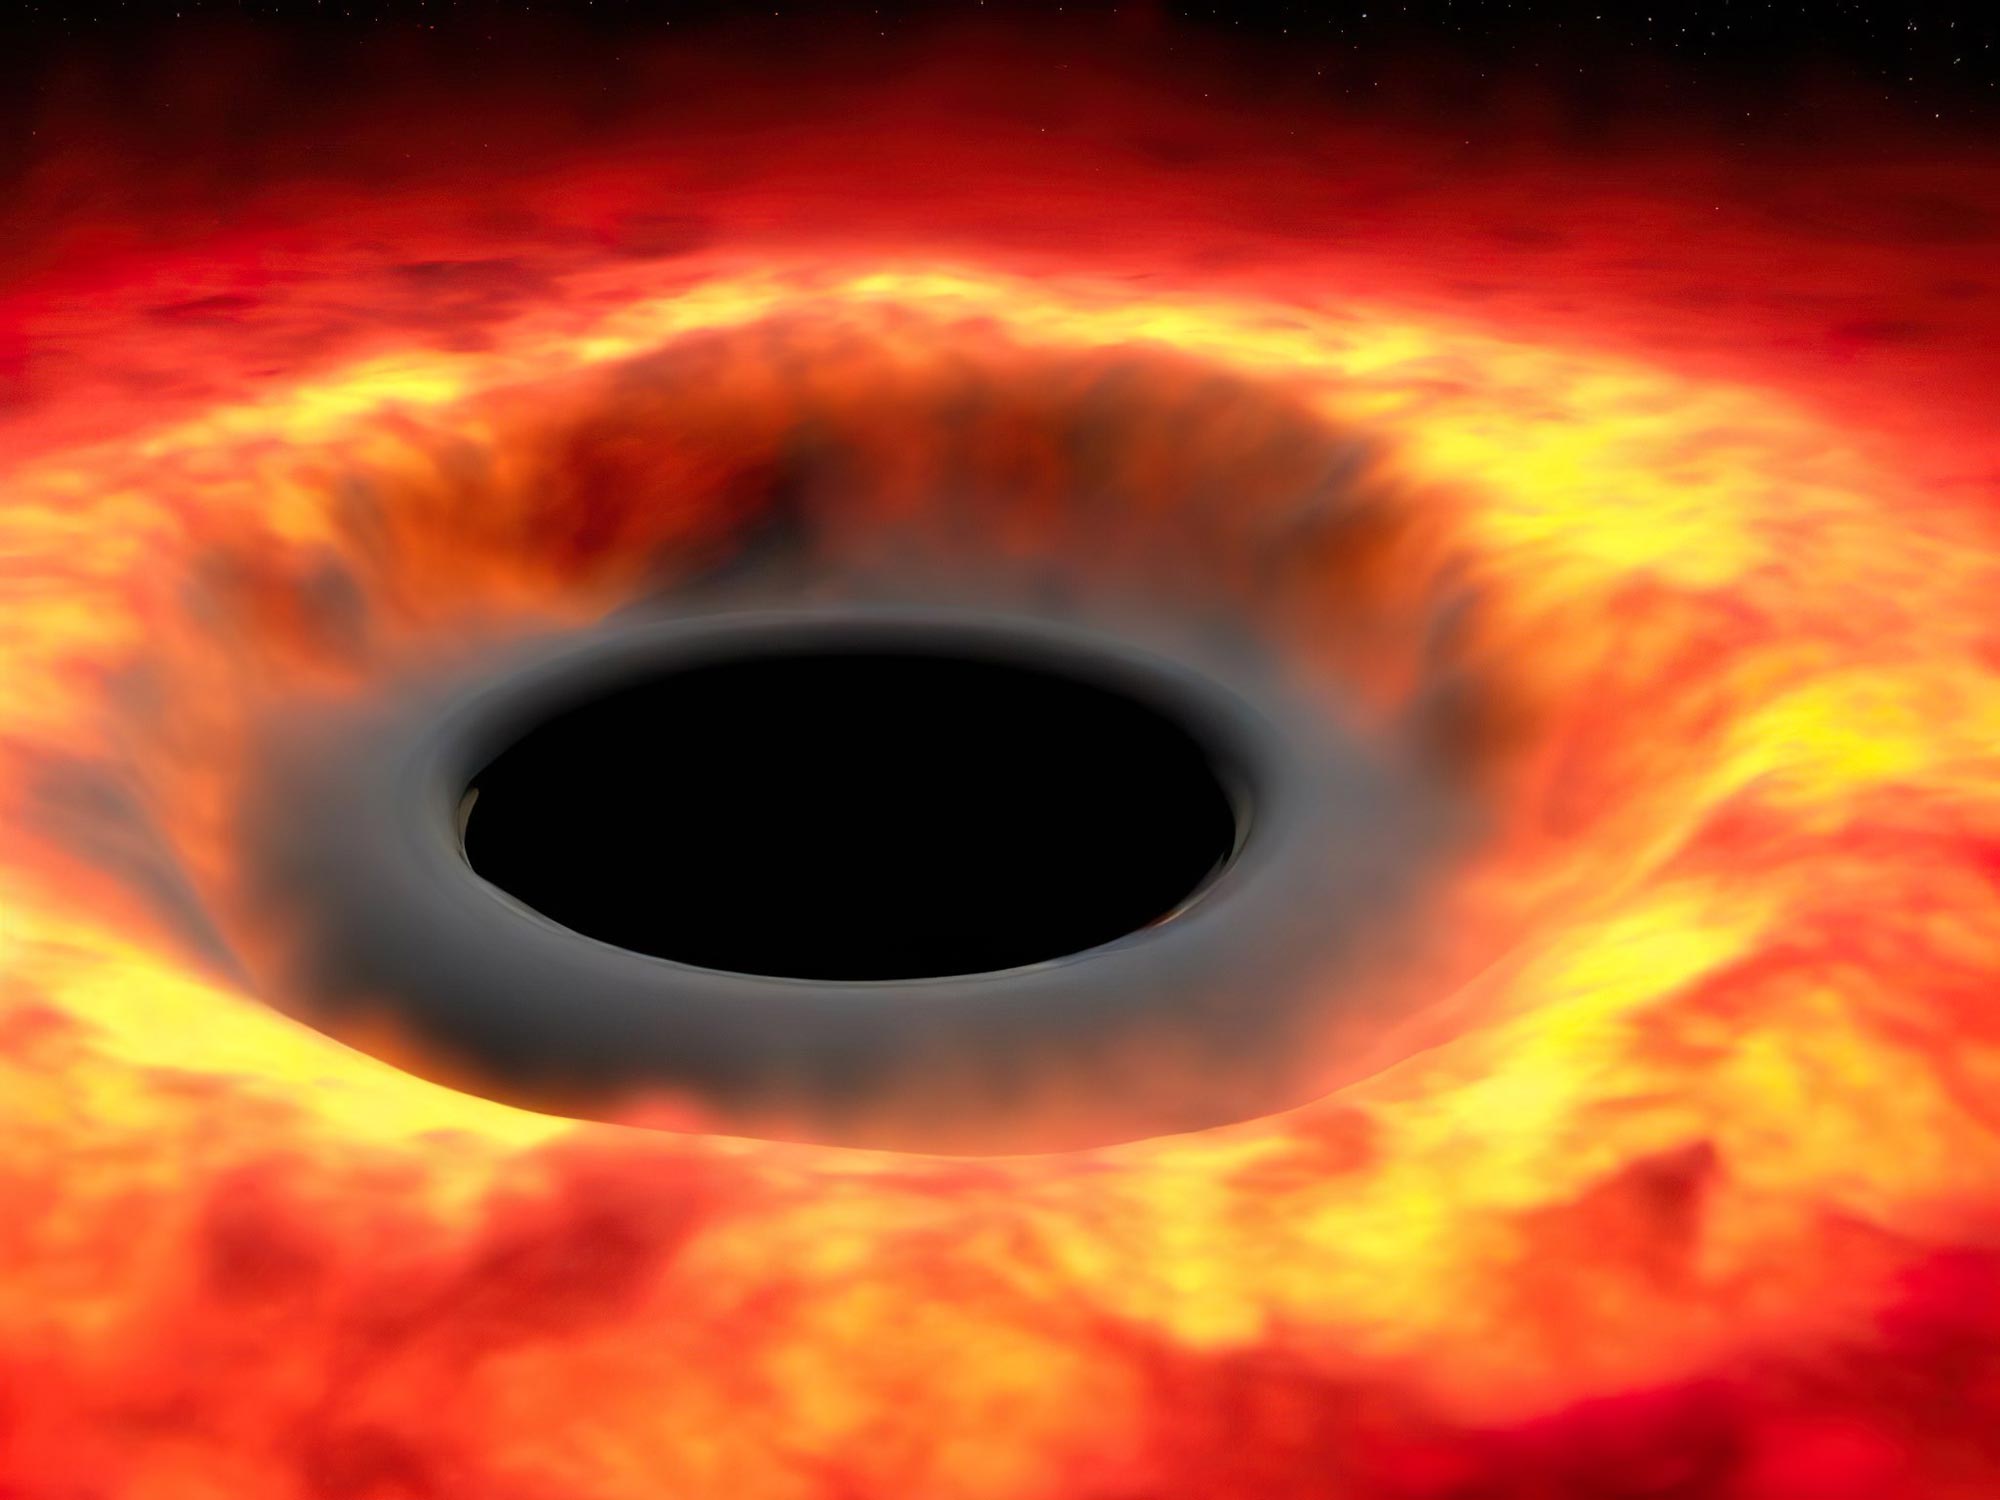 Az univerzumban minden elpárolgásra van ítélve – Hawking sugárzáselmélete nem korlátozódik a fekete lyukakra